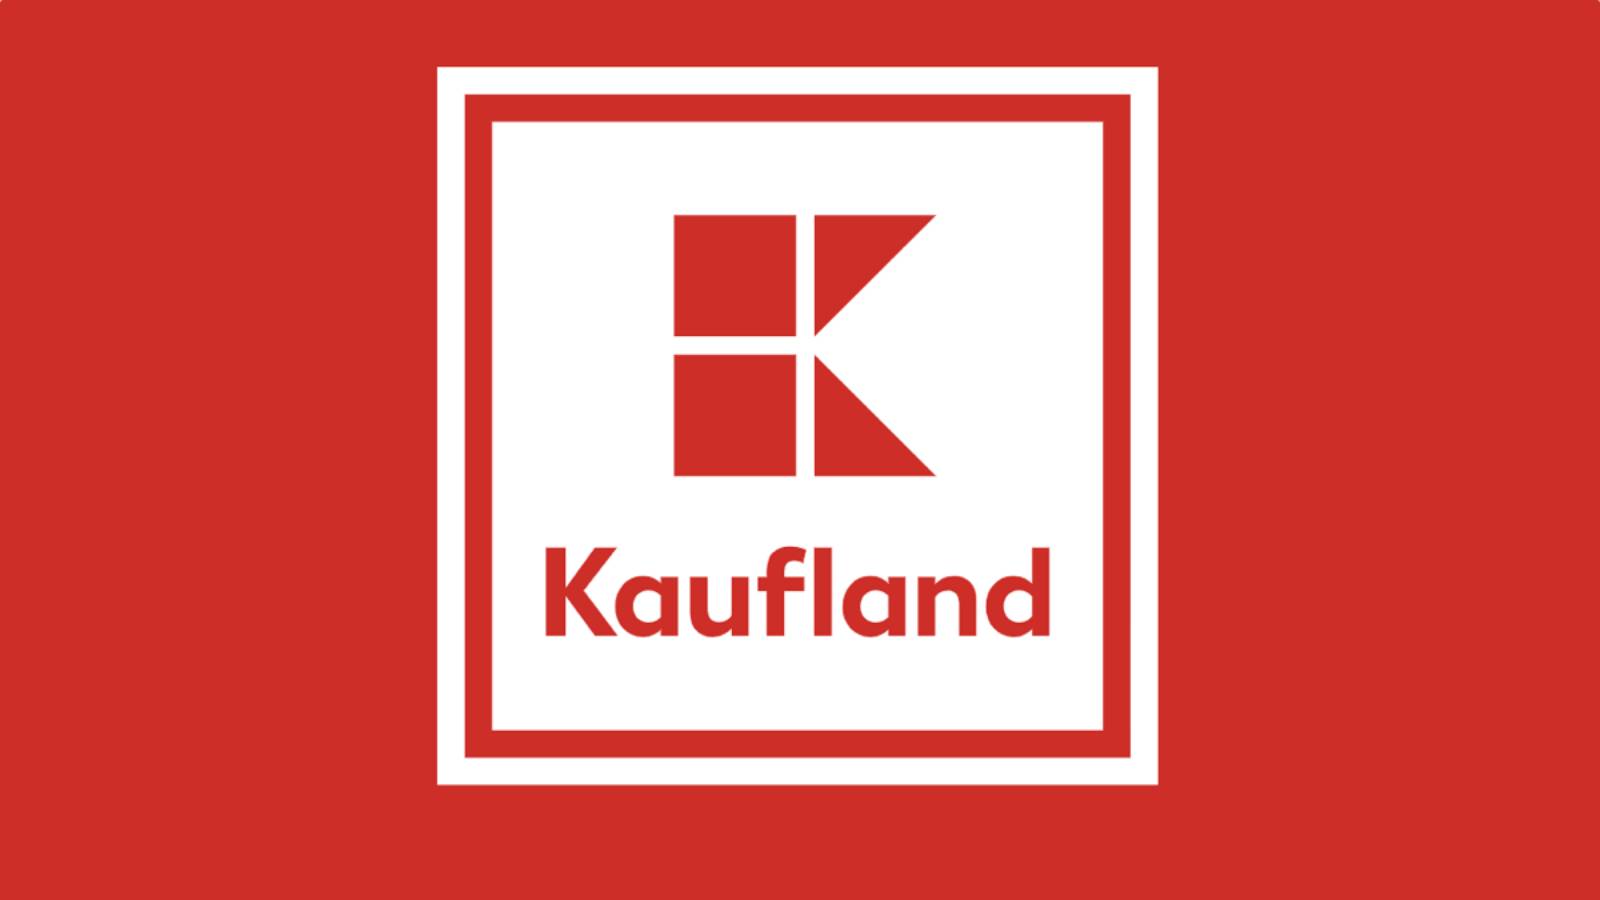 Vale de compras Kaufland